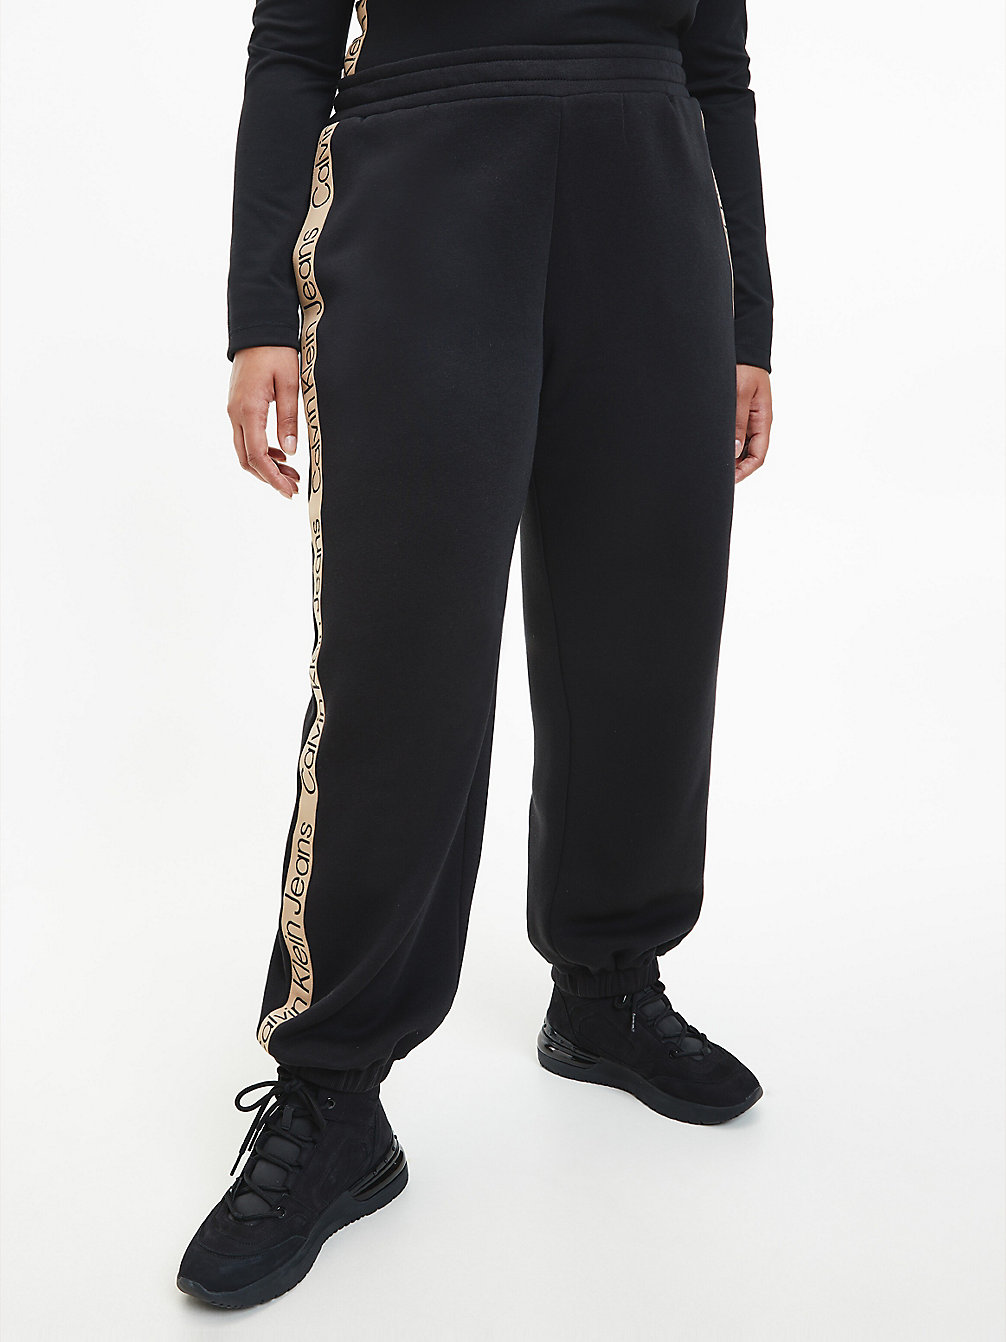 CK BLACK > Spodnie Dresowe Plus Size Z Taśmą Z Logo > undefined Kobiety - Calvin Klein